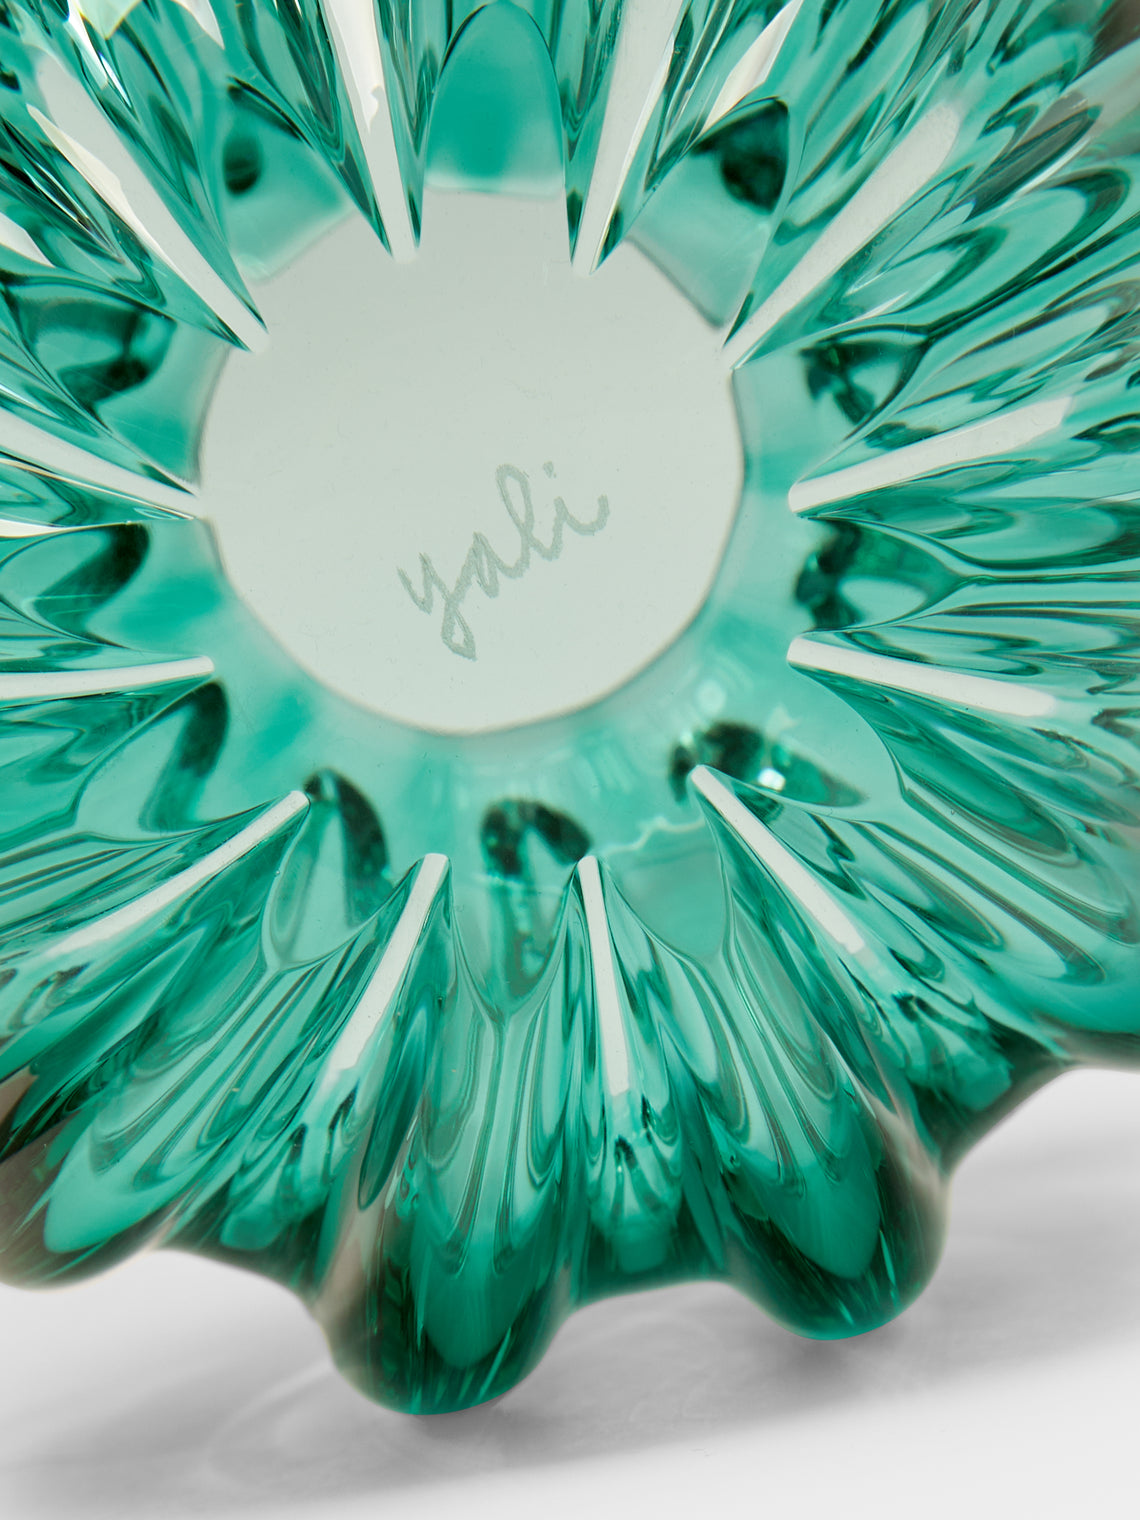 Yali Glass - Fiori Uovo Hand-Blown Murano Glass Bud Vase -  - ABASK